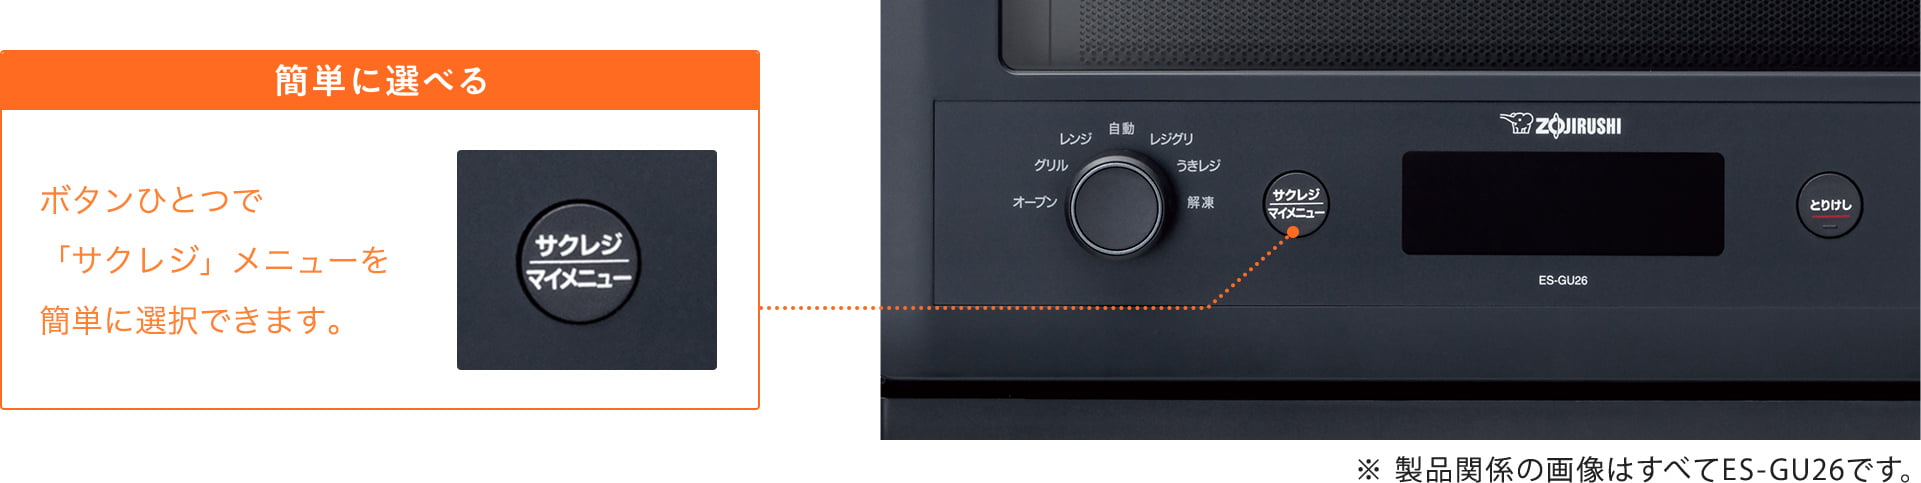 簡単に選べる ボタンひとつで「サクレジ」メニューを簡単に選択できます。 ※製品関係の画像はすべてES-GU26です。